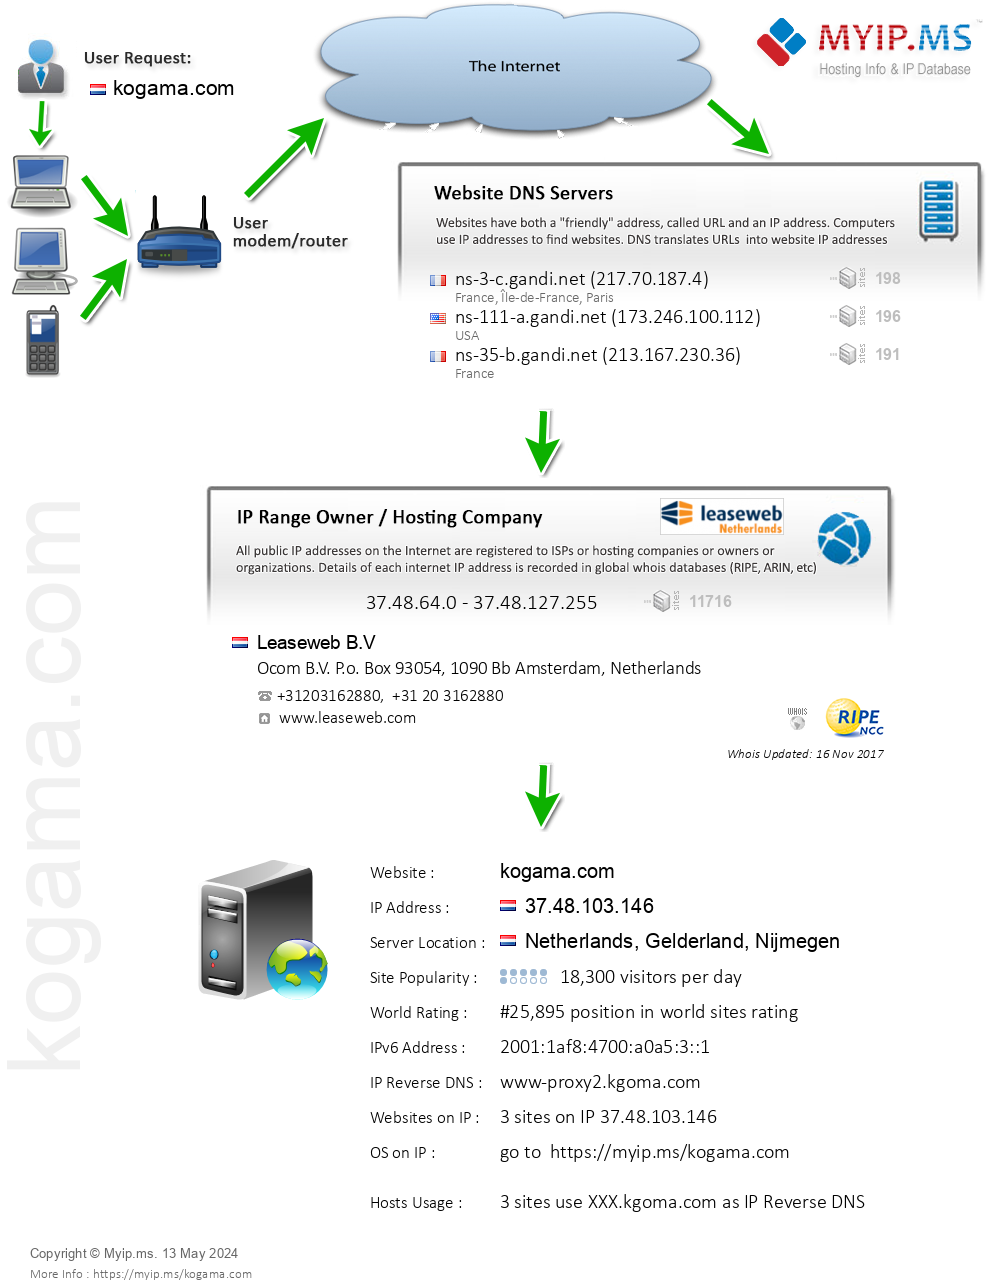 Kogama.com - Website Hosting Visual IP Diagram